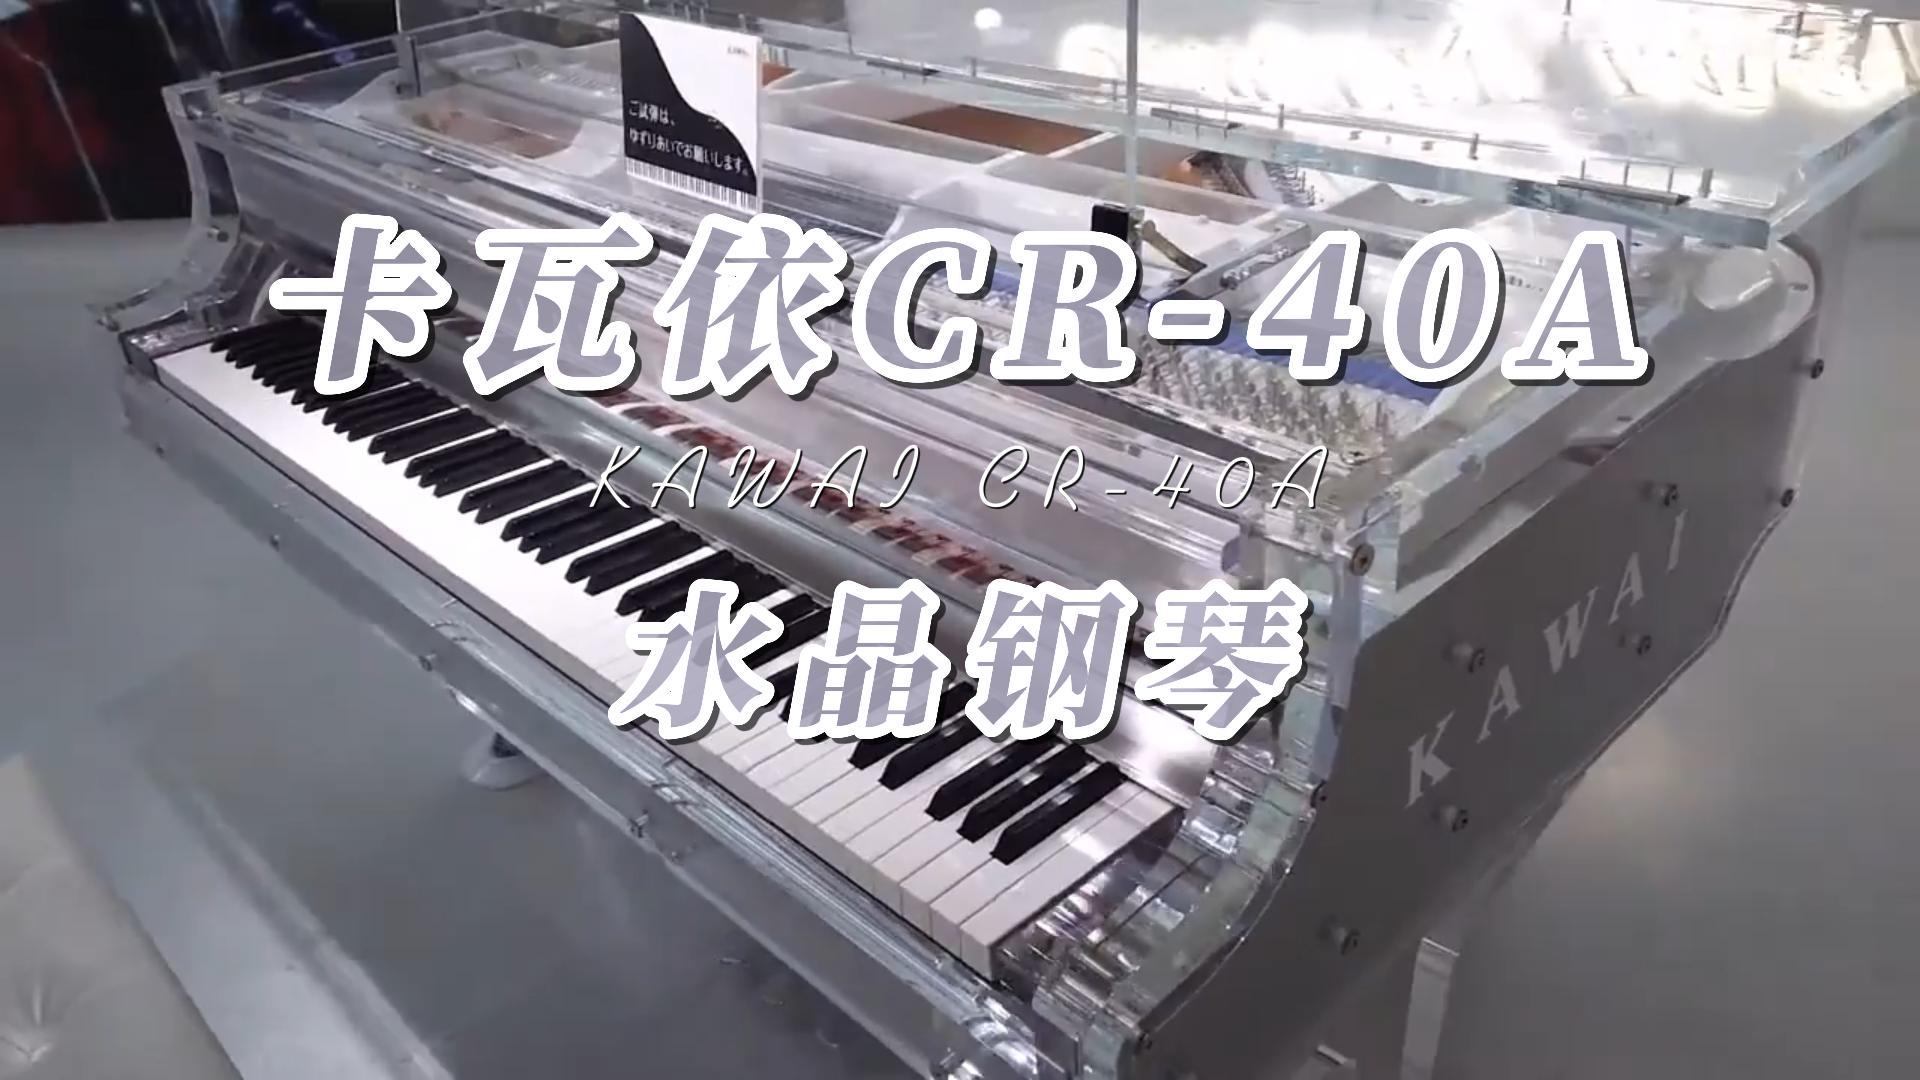 KAWAI 卡瓦依水晶三角钢琴CR-40A水晶钢琴-柏通琴行整理